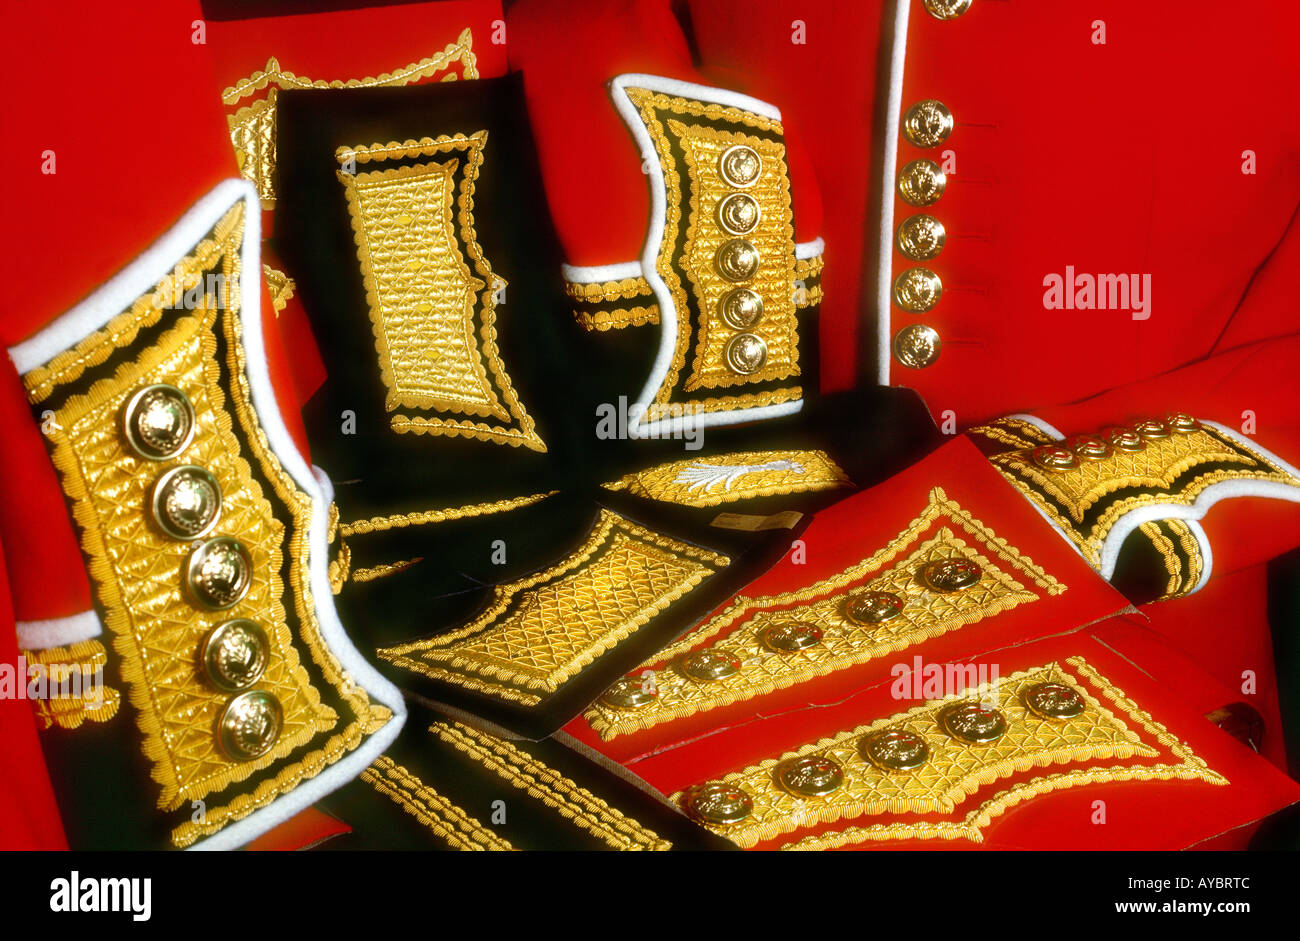 Stilleben, Farbfelder rot scarlet Stoff mit goldenen Zopf & Messingknöpfe für königliche militärische Uniformen gemacht durch die Deges Savile Row, Stockfoto